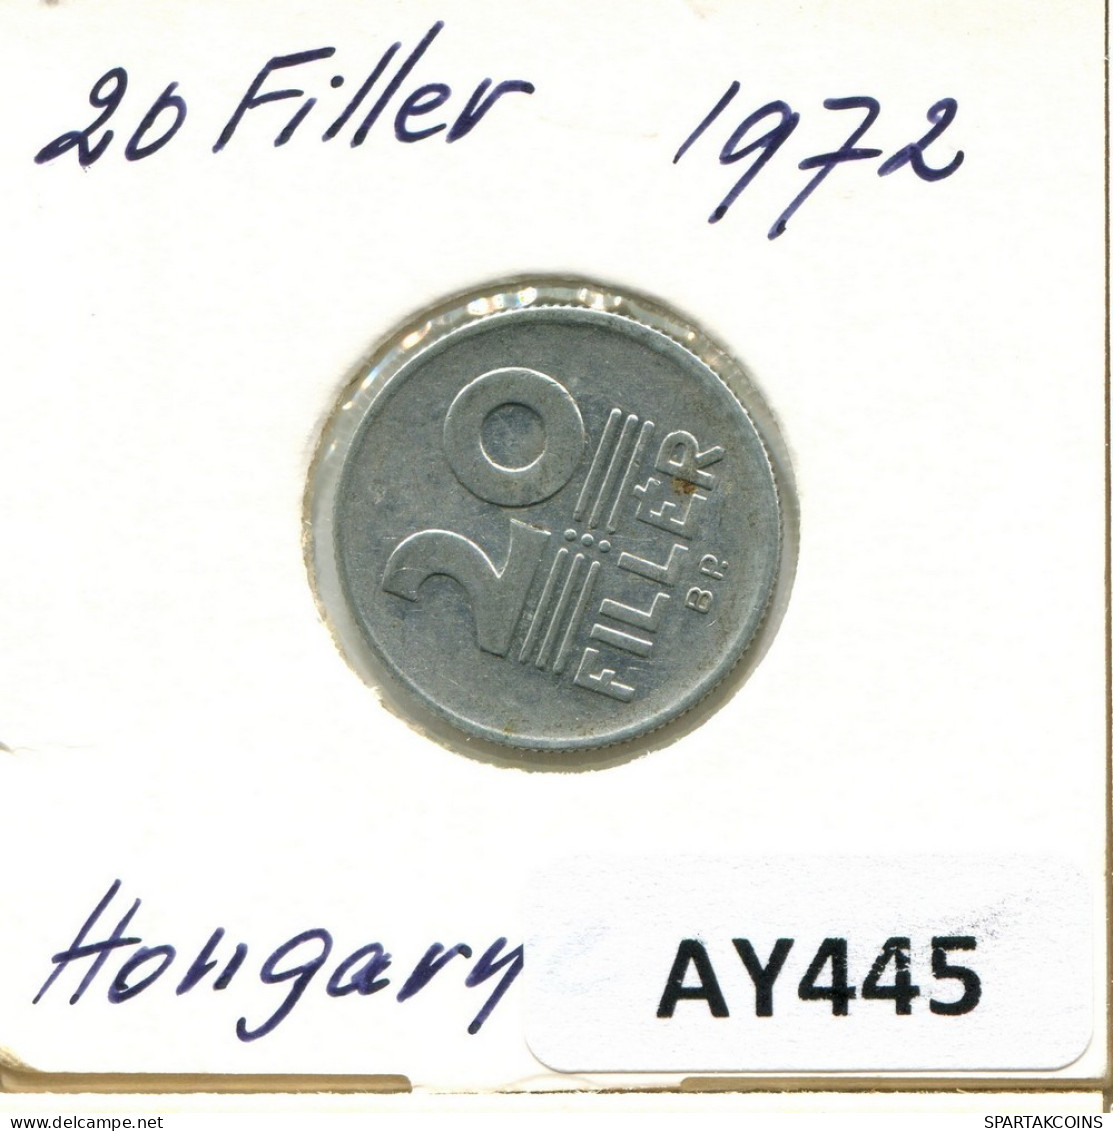 20 FILLER 1972 SIEBENBÜRGEN HUNGARY Münze #AY445.D.A - Hungría